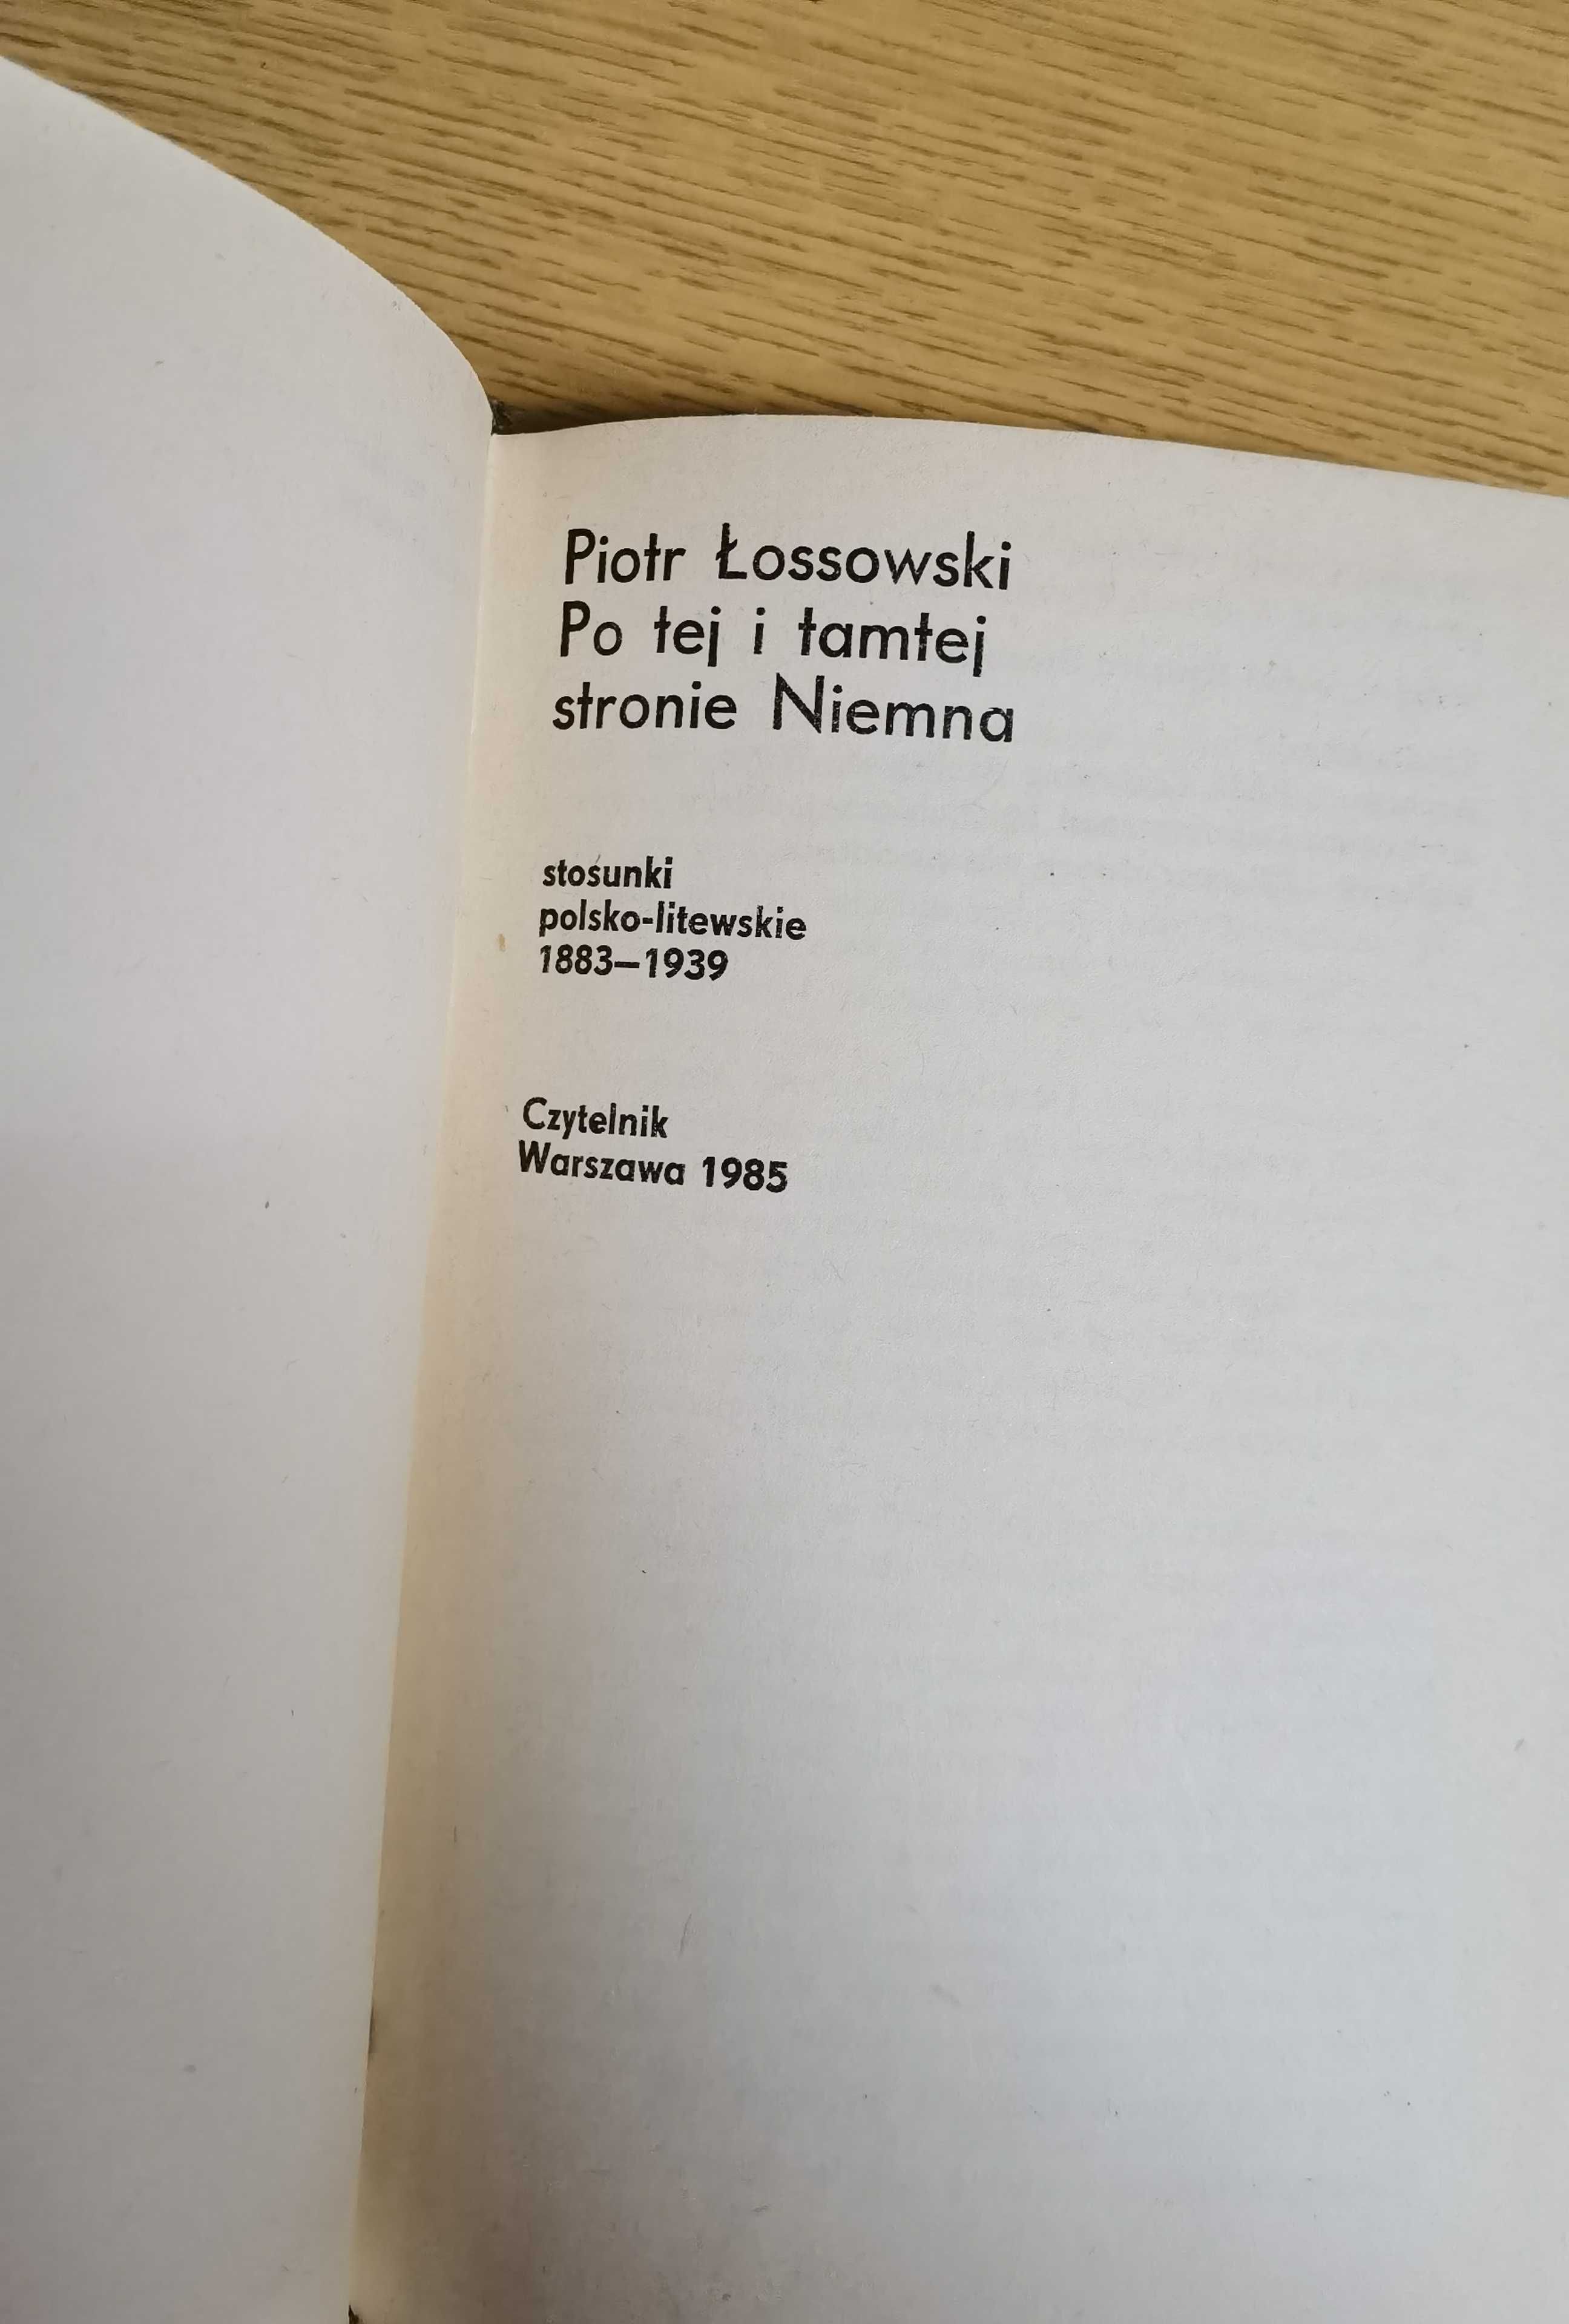 P. Łossowski PO TEJ I TAMTEJ stronie Niemna, Czytelnik 1985